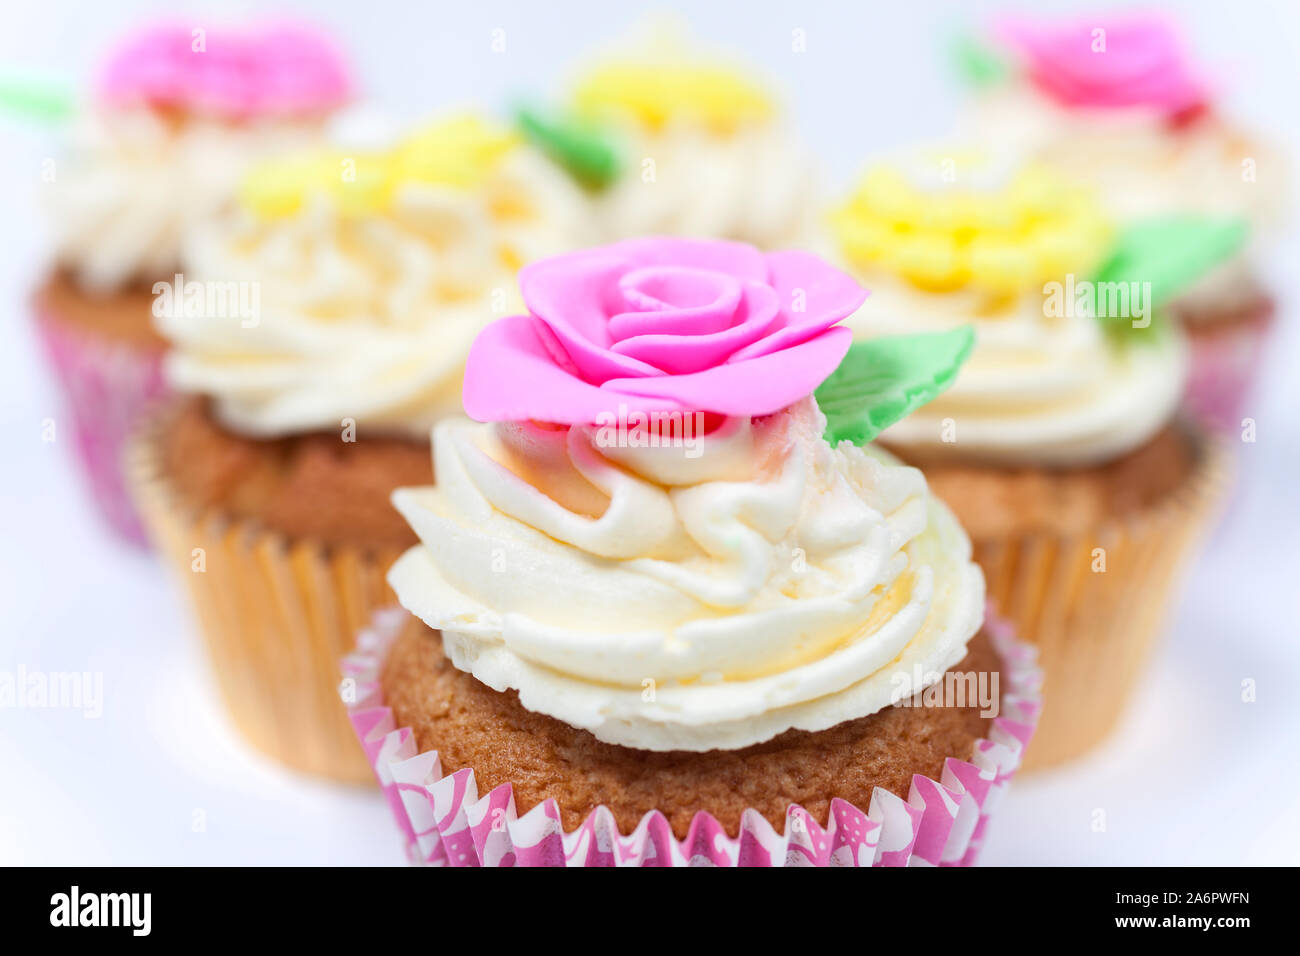 Cupcakes oder Tasse Kuchen mit Puderzucker oder Reifbildung, Rosa, Gelb und Creme mit grünen Blättern, Rose und Blumenschmuck auf weißem Hintergrund fotografiert. Stockfoto